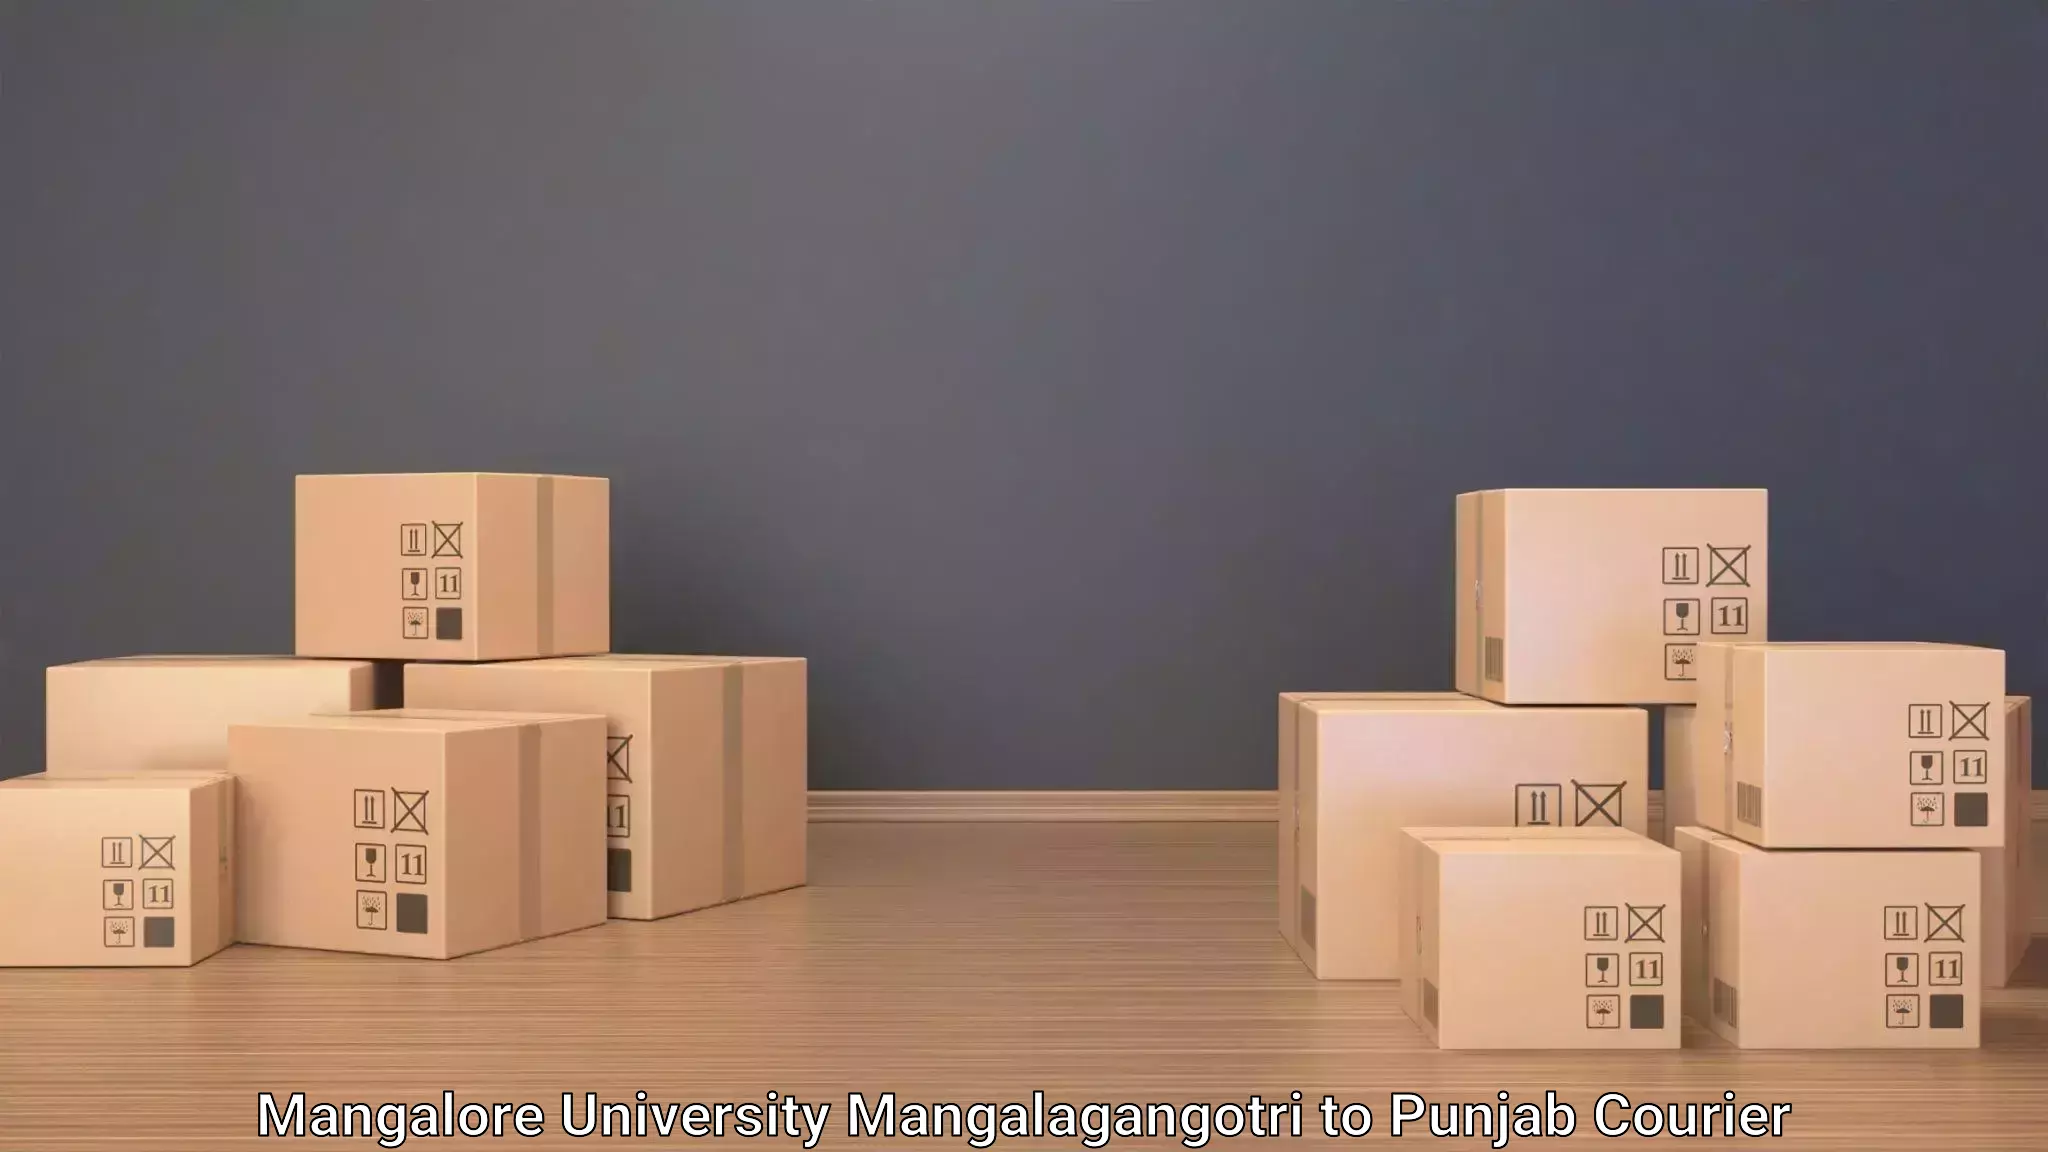 Baggage courier logistics Mangalore University Mangalagangotri to Ludhiana